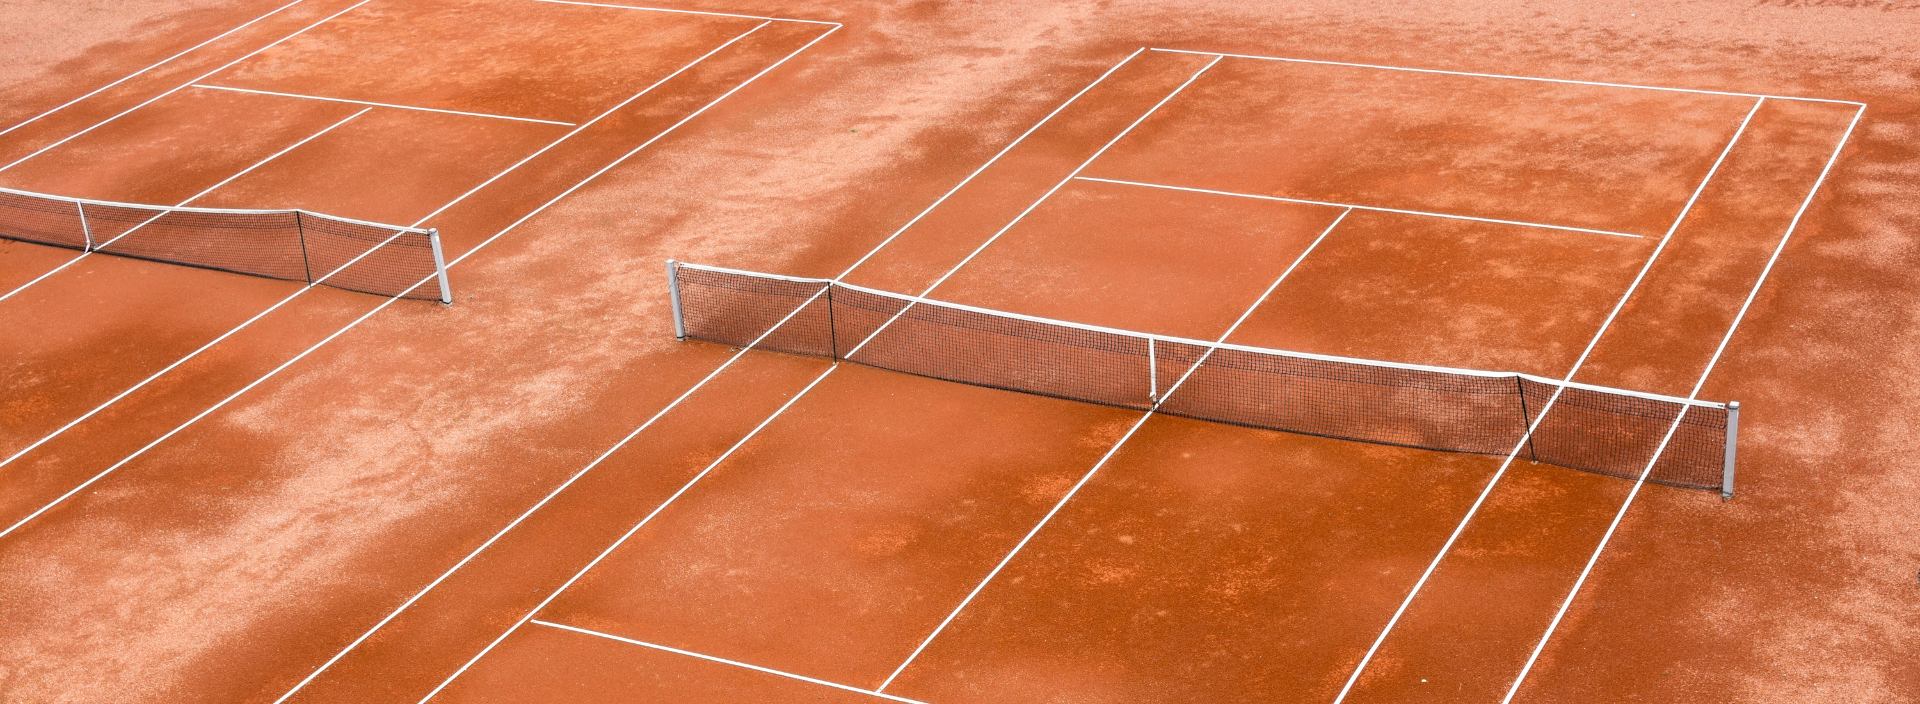 terrain de tennis court de tennis en terre battue